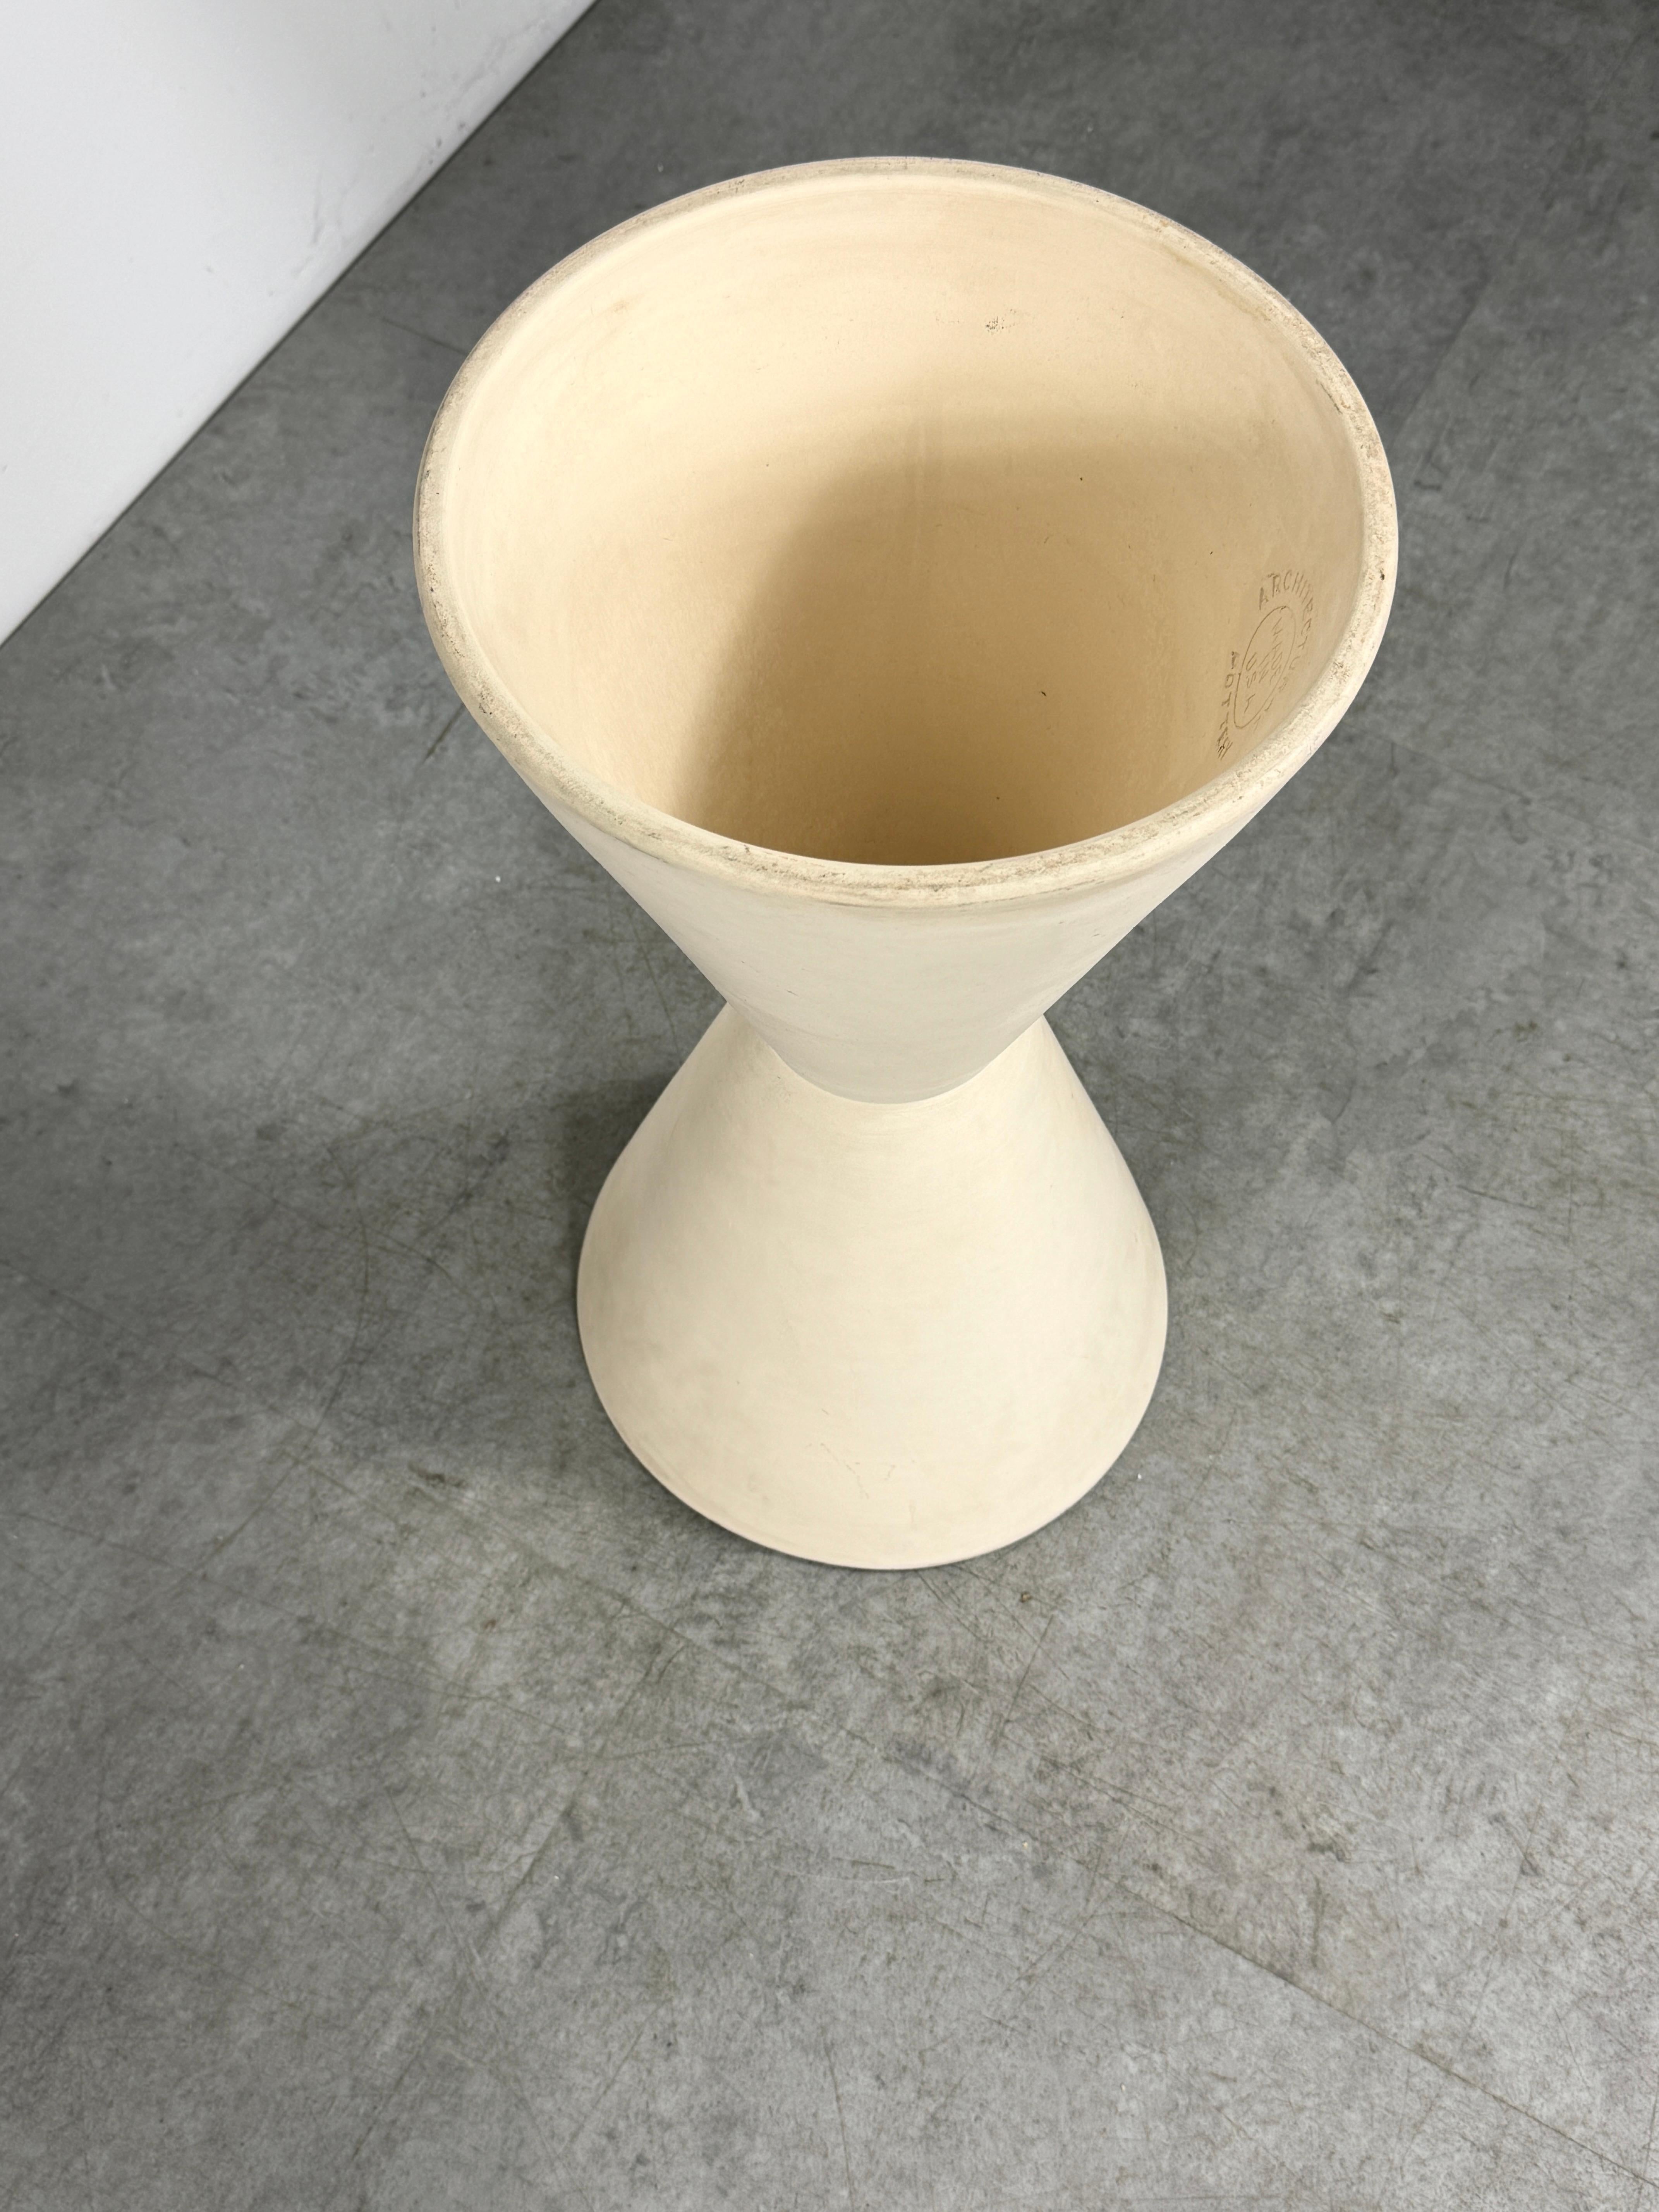 Lagardo Tackett Double Cone Architectural Pottery Planter Bisque Ceramic 1950s For Sale 3